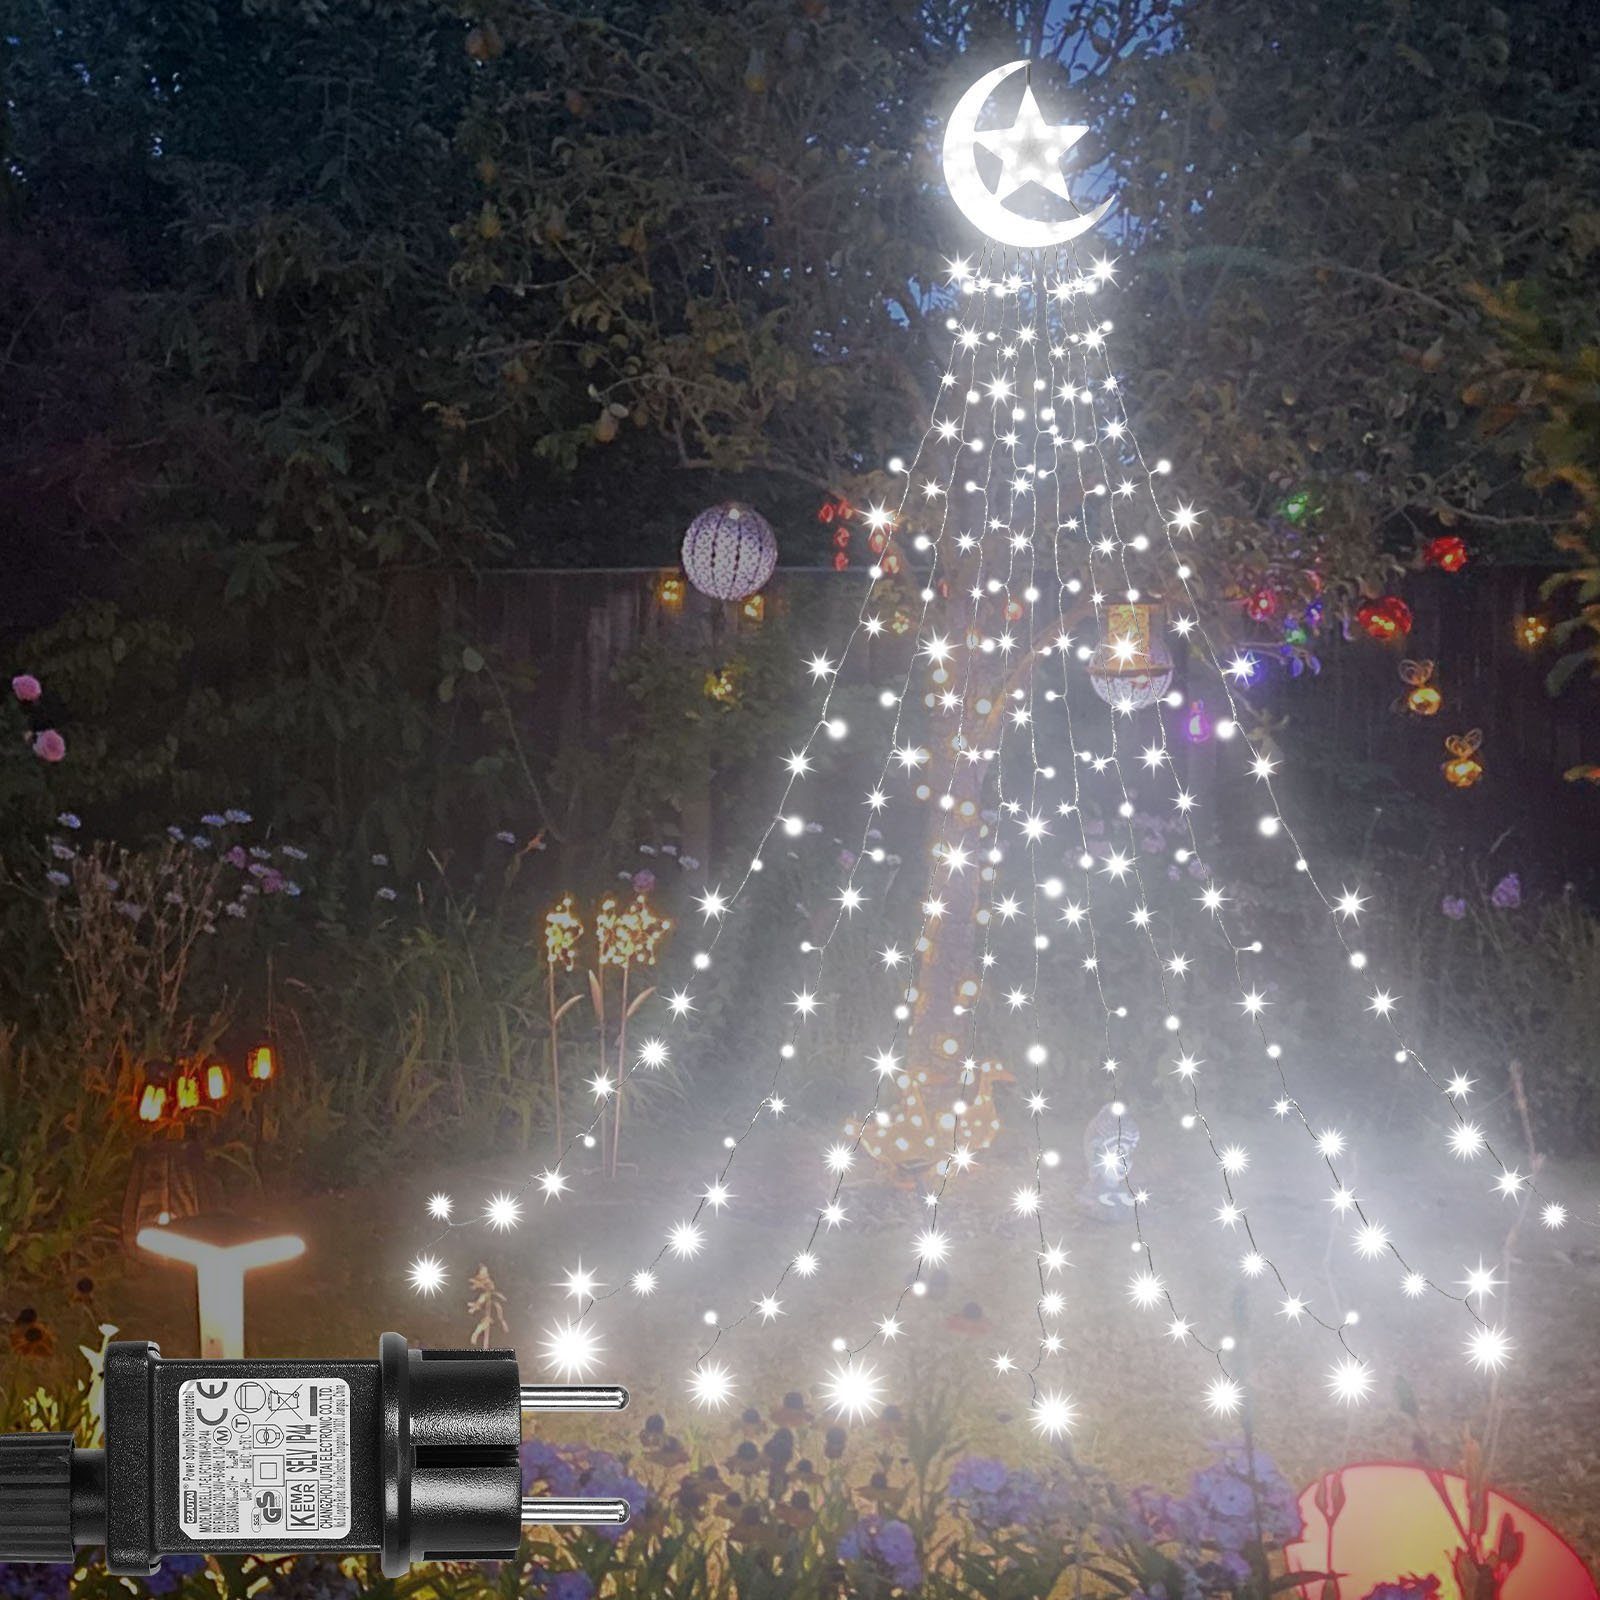 Rosnek LED-Lichtervorhang 8 Modi, wasserdicht, für Dach Innenhof Ramadan Weihnachtsdeko, 350-flammig, Timer;Wasserfall Baum Lichter; mit Topper Mondstern,Speicherfunktion Weiß